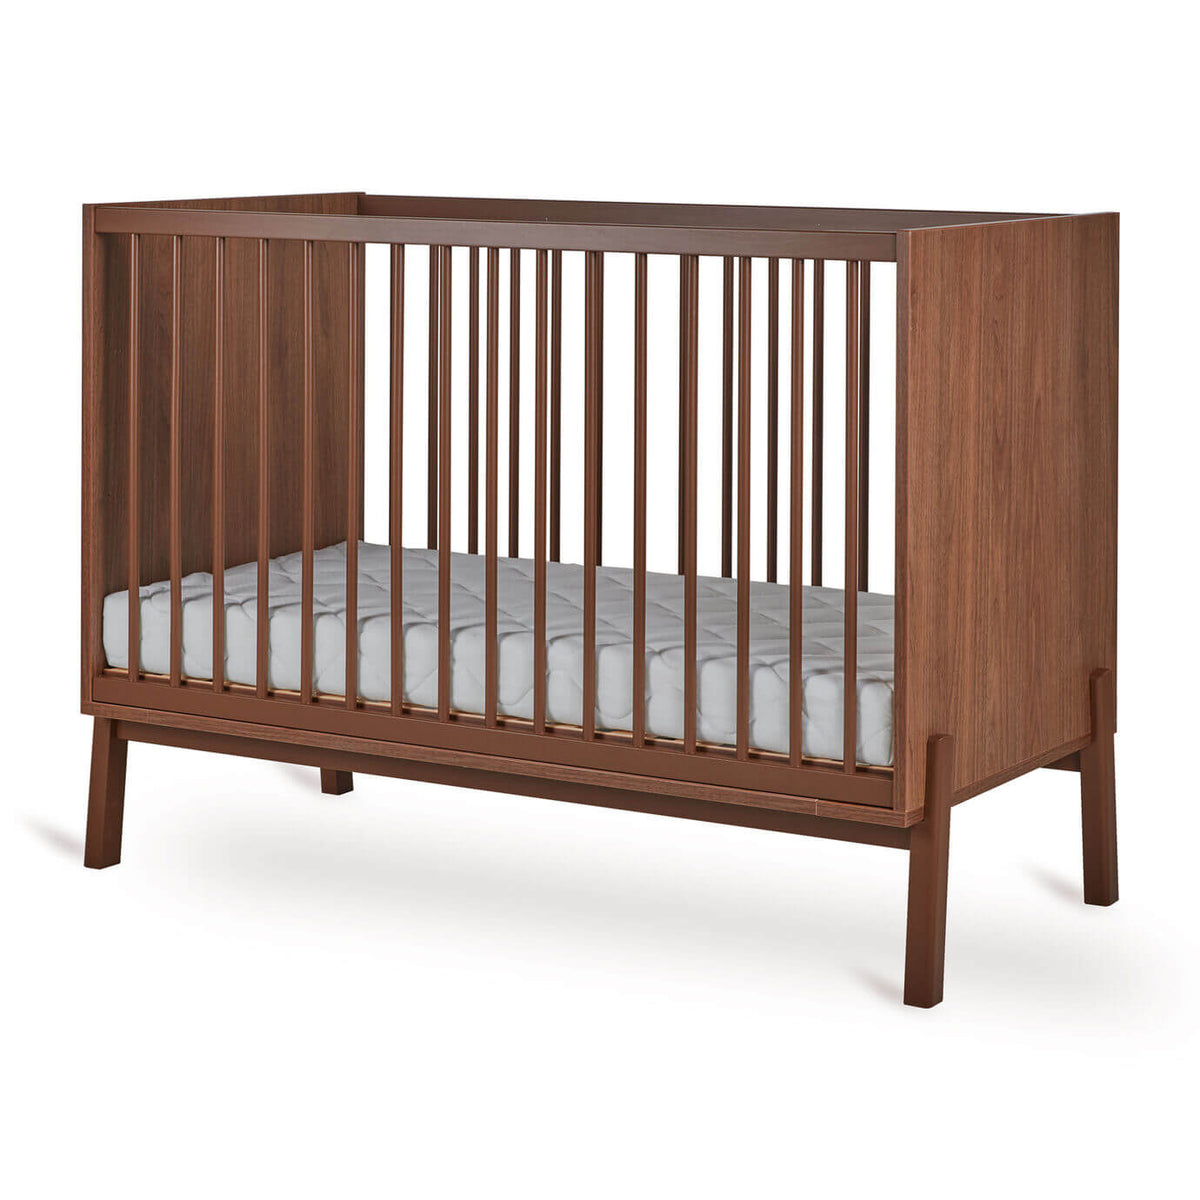 Lit à barreaux ASHI Châtaignier 120x60cm Quax - Cribs & Toddler Beds par Quax